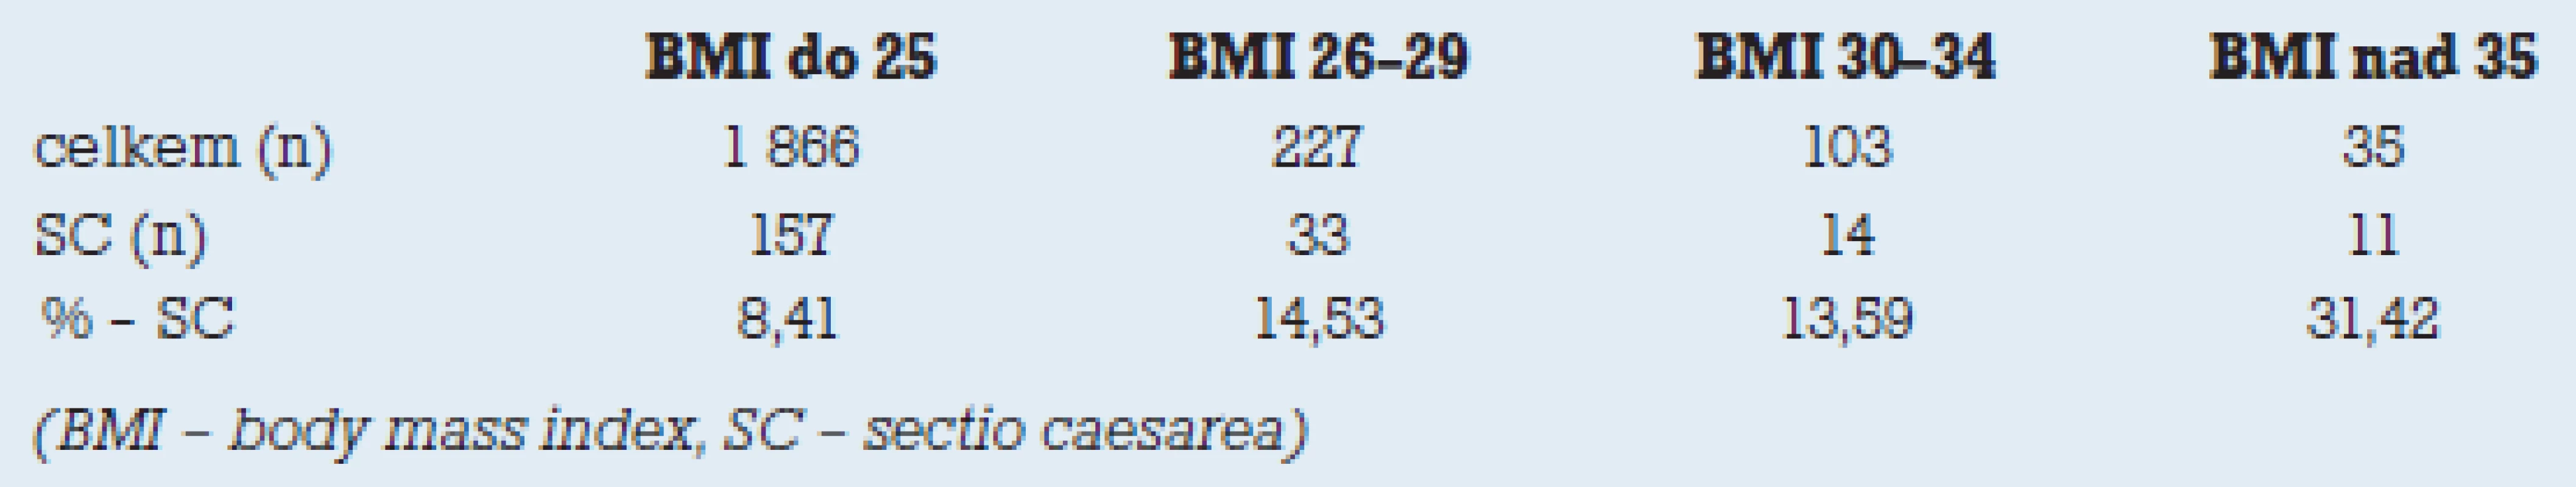 Přehled zastoupení císařských řezů dle BMI rodiček.